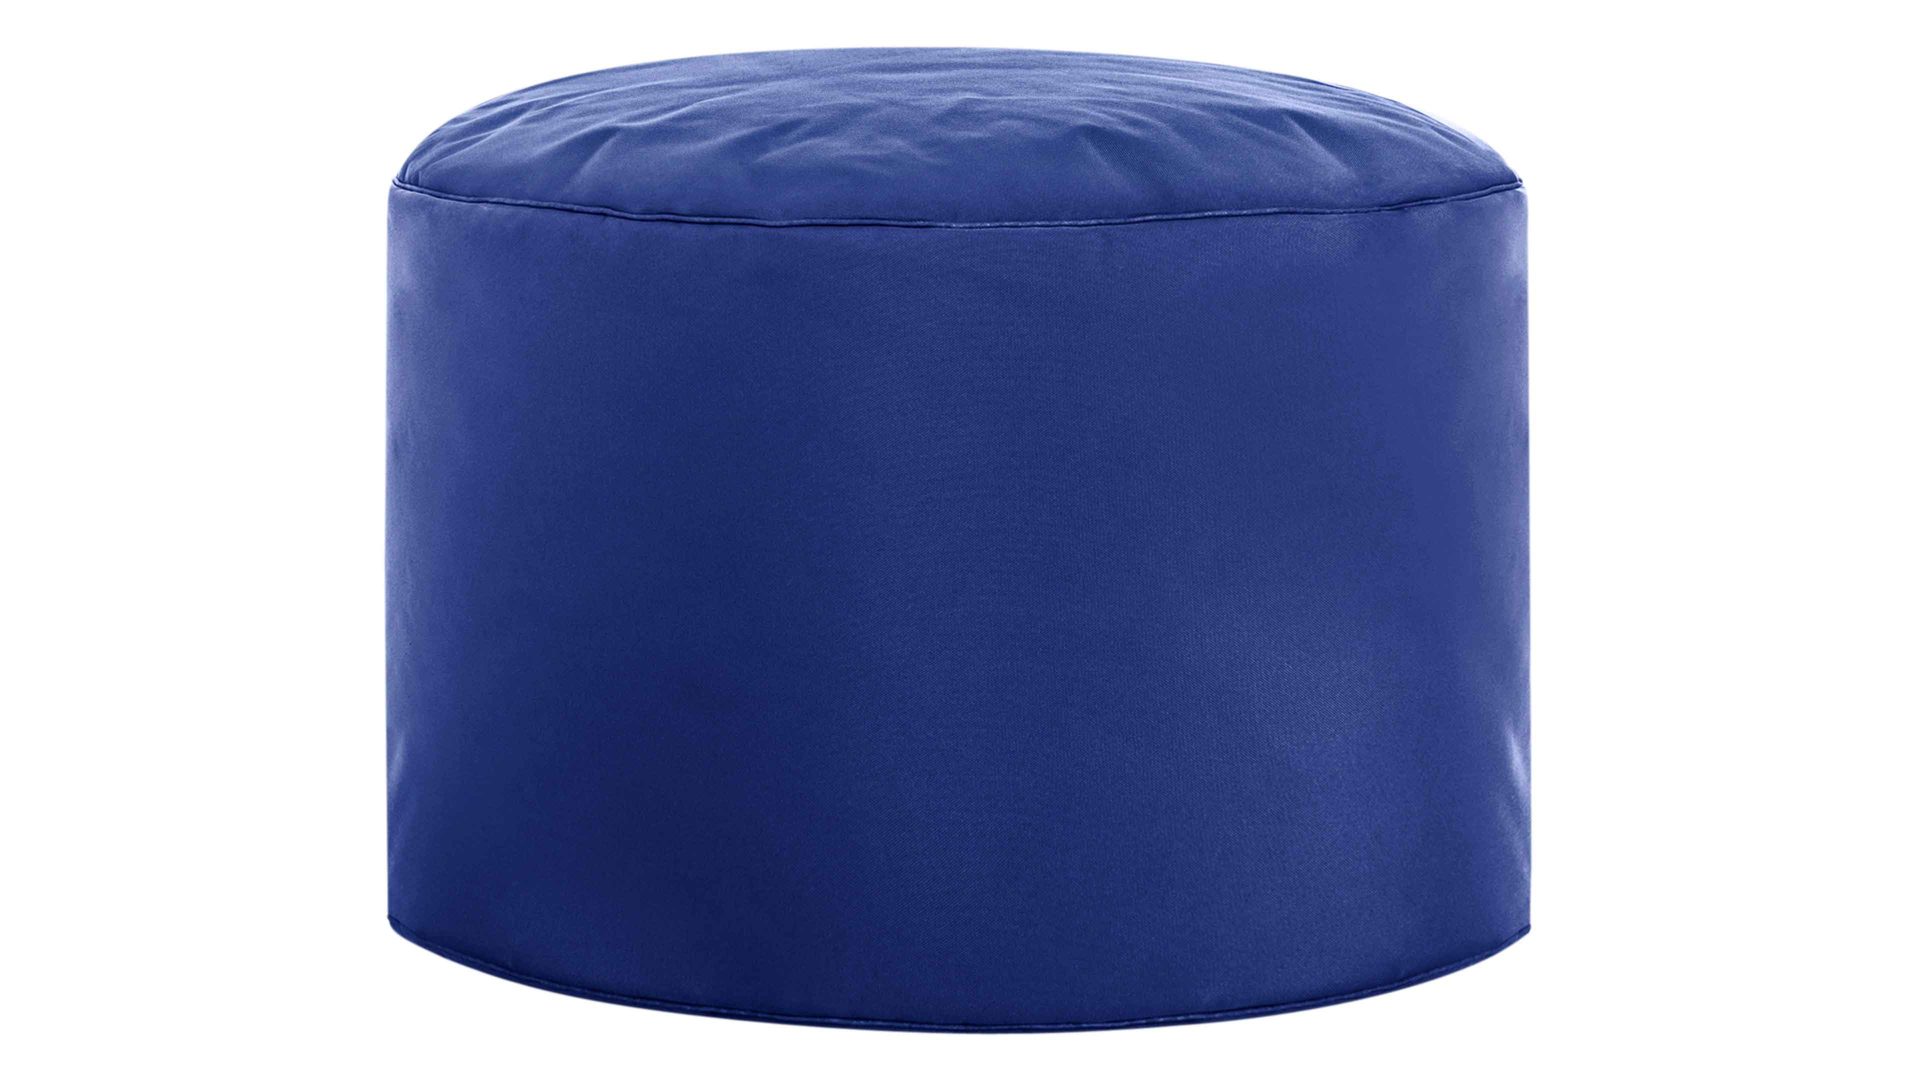 Sitzsack-Hocker Magma sitting point aus Kunstfaser in Blau SITTING POINT Sitzsack-Hocker dotcom scuba® als Kleinmöbel dunkelblaue Kunstfaser – Durchmesser ca. 50 cm